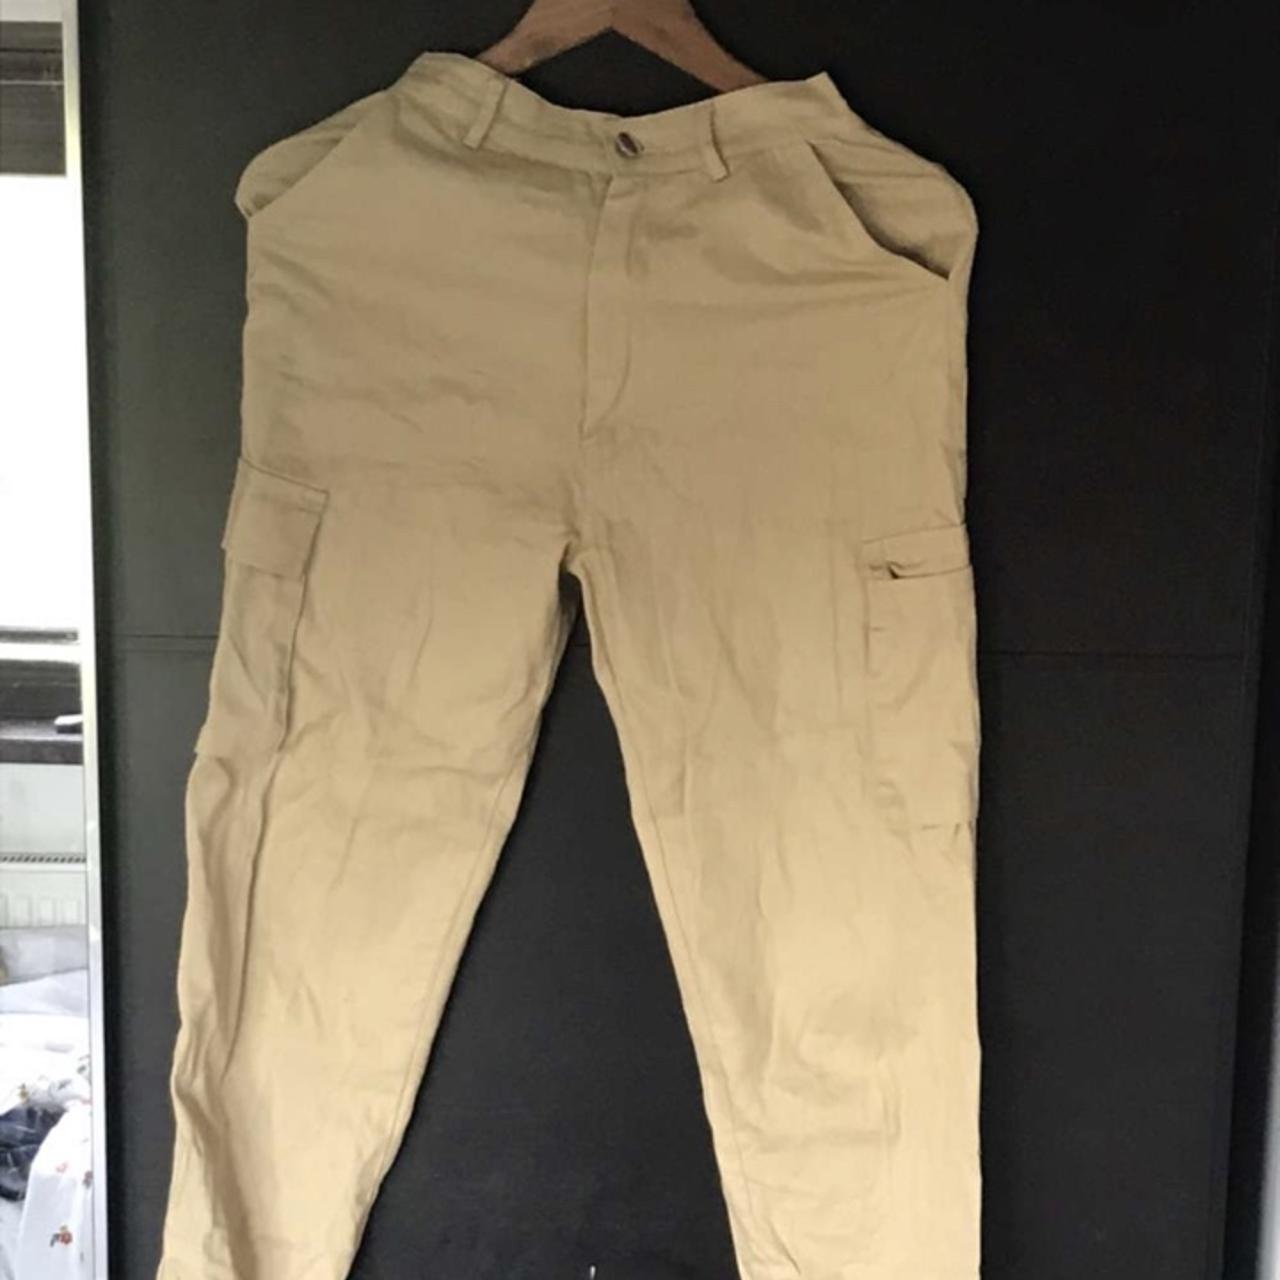 extra photos of cargo pants - Depop